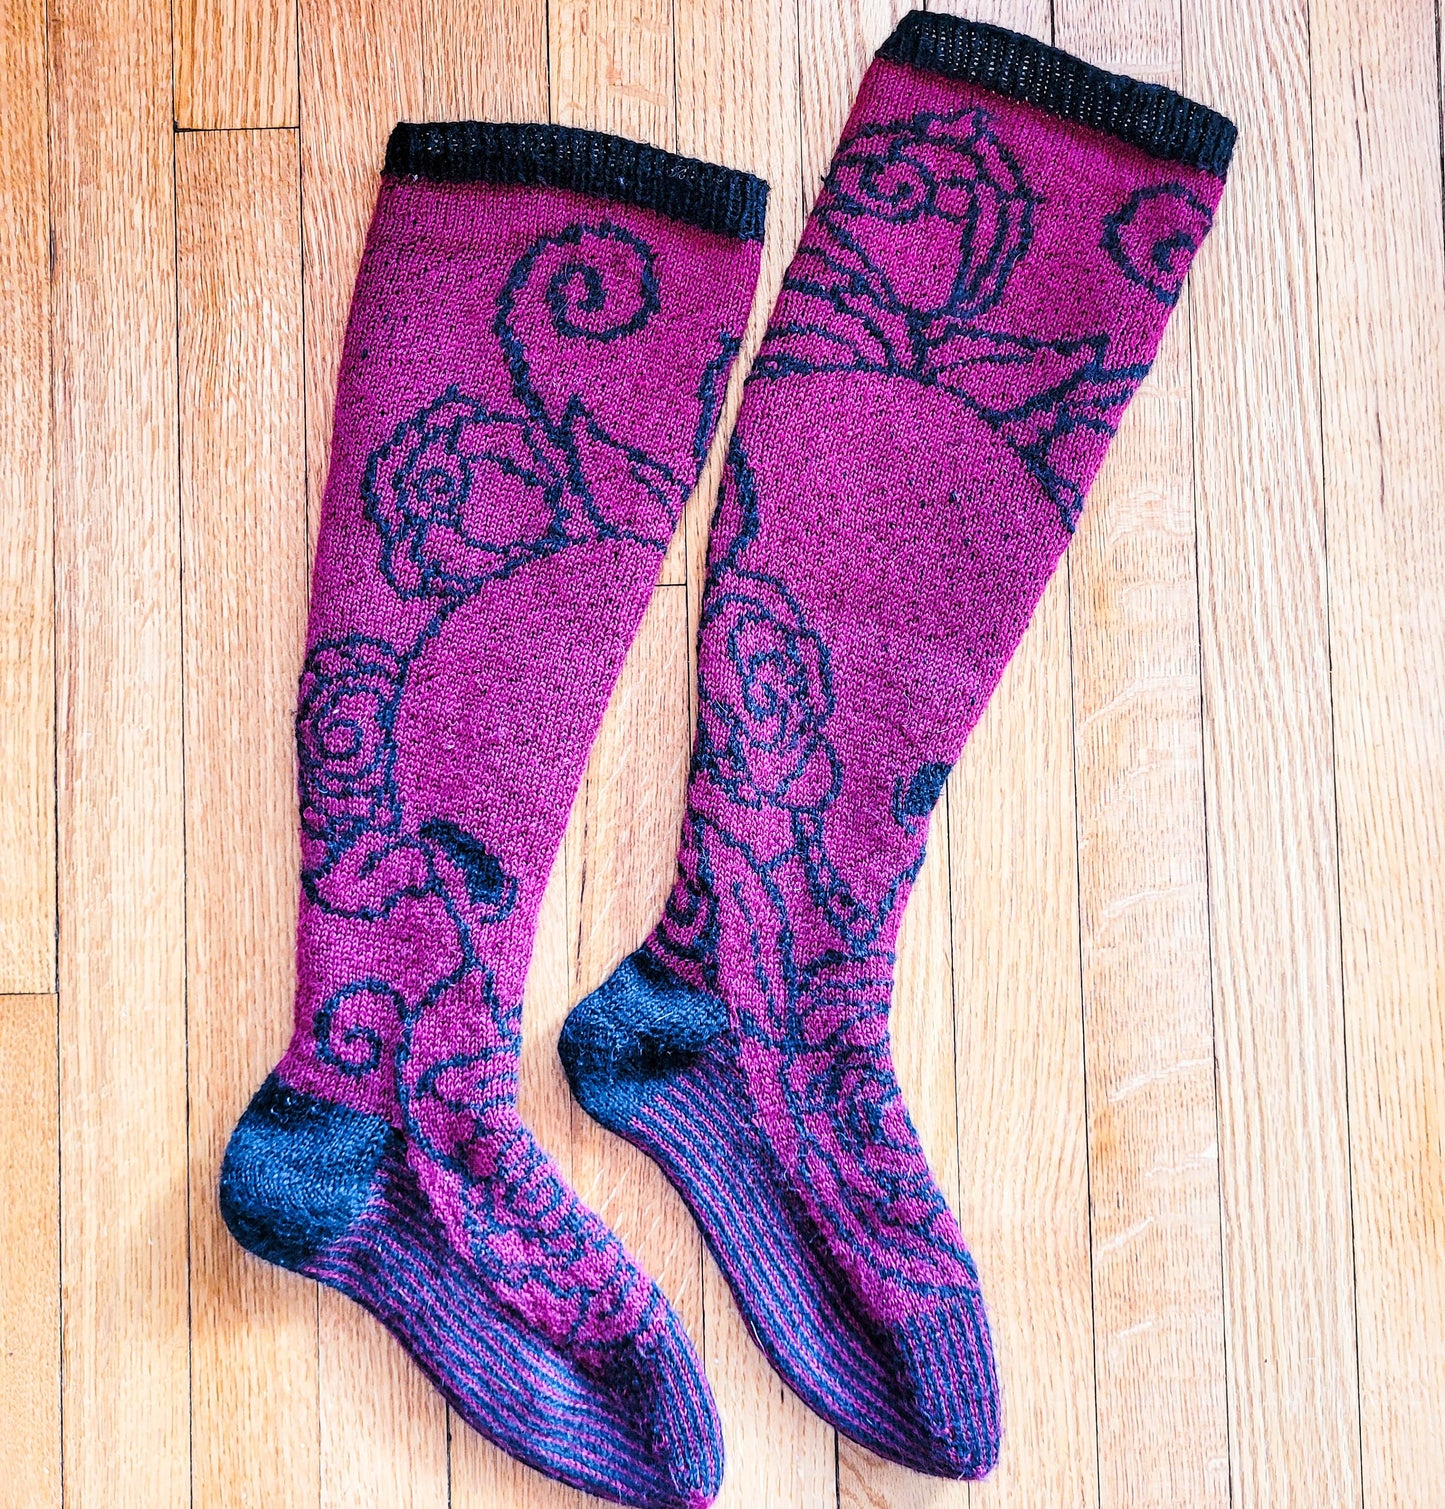 Pushing Roses - Knee High Stockings - Knitting Pattern